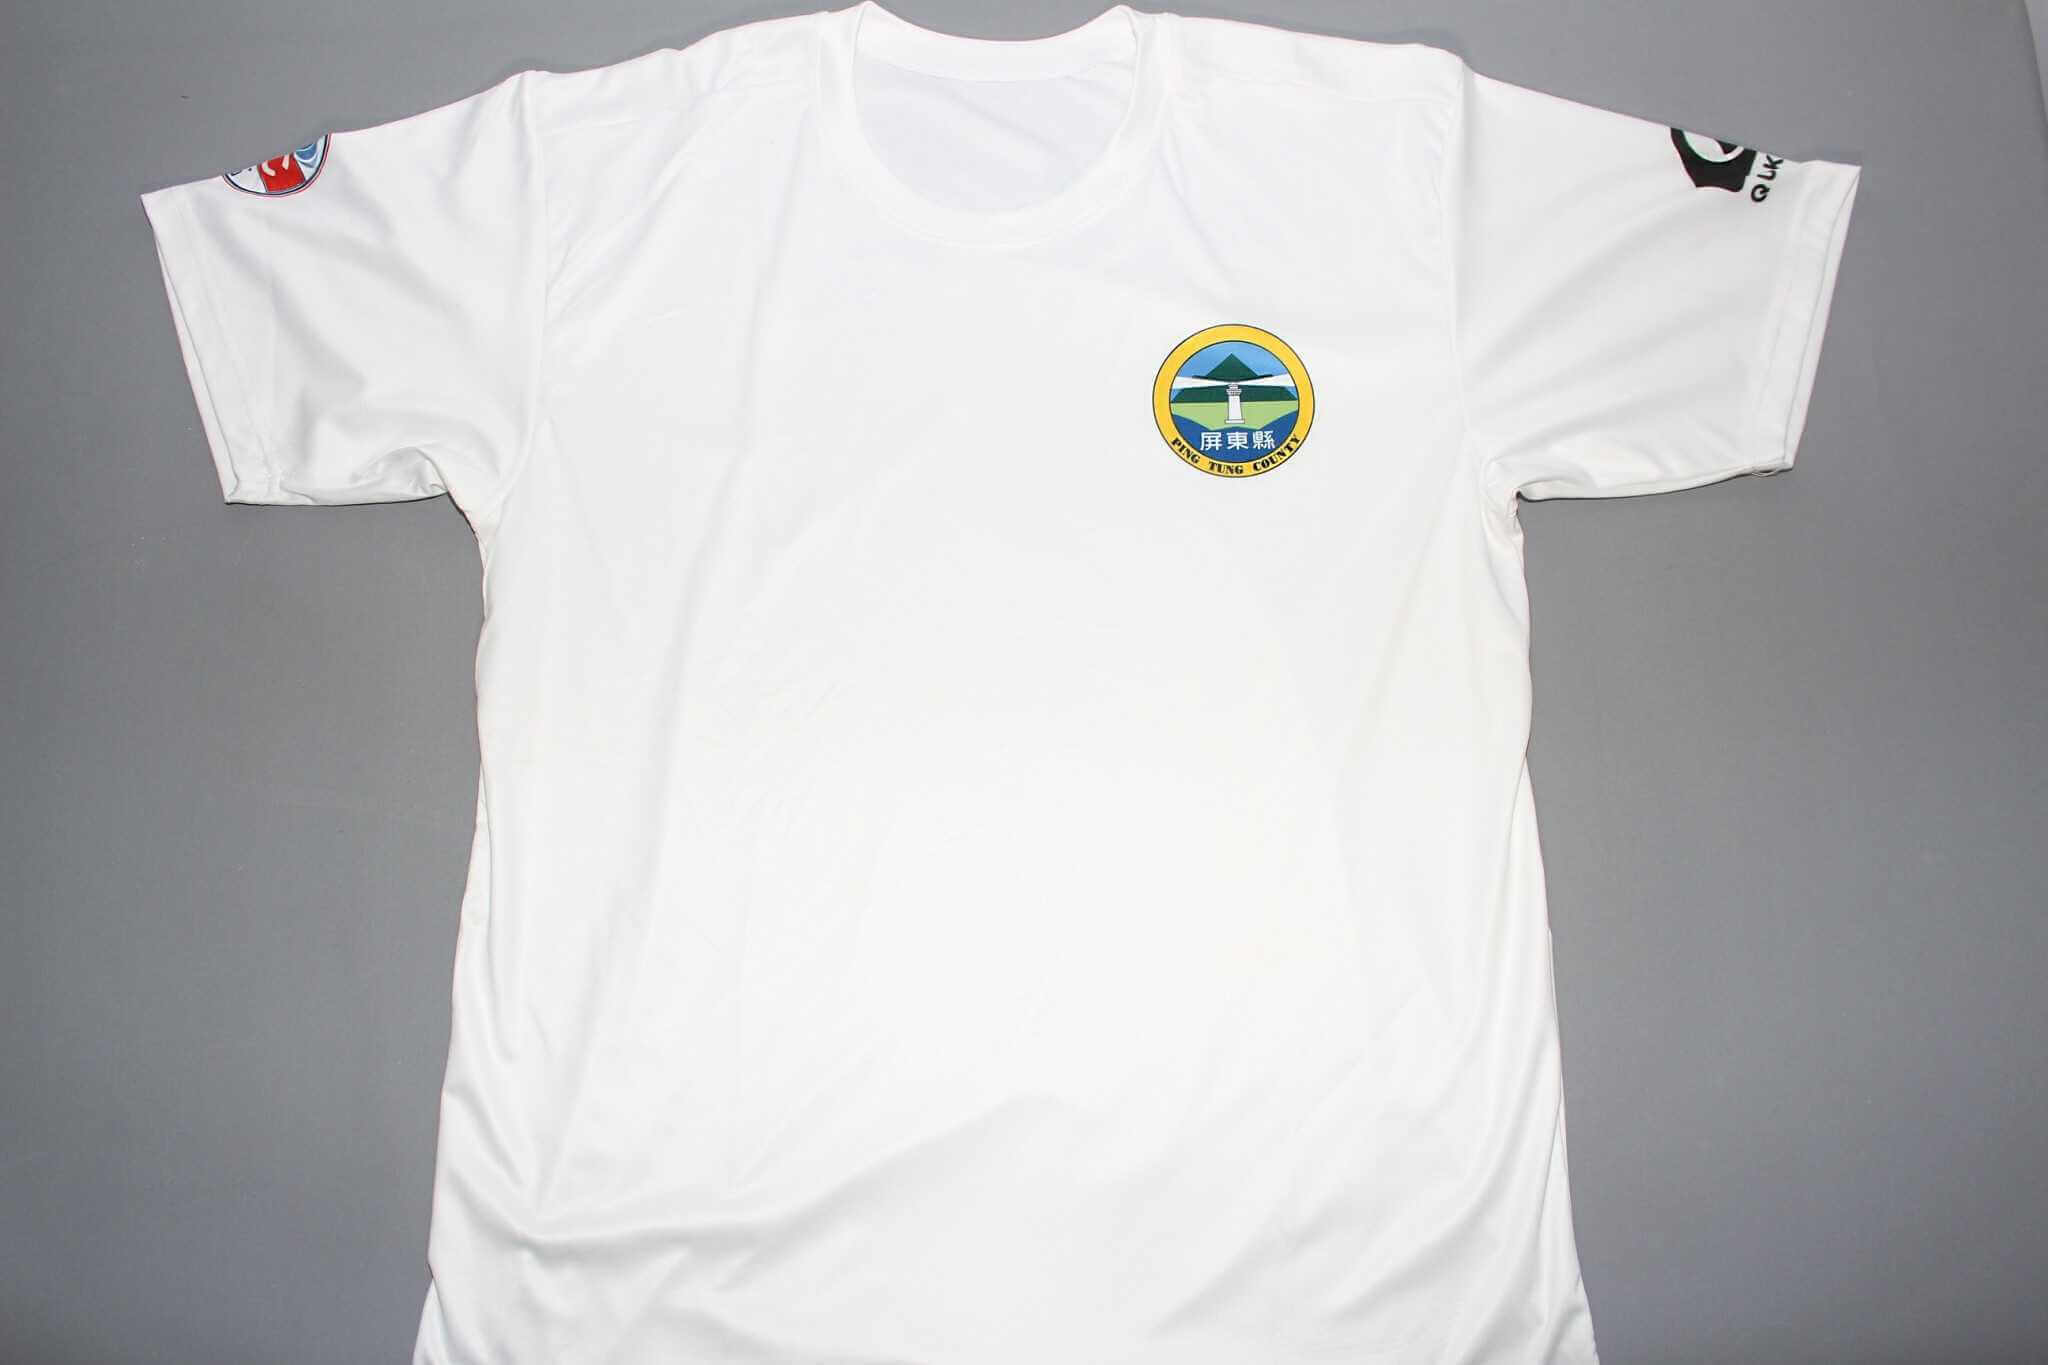 2018國際衝浪大賽代表T恤的第1張圖(客製化公司制服、班服製作、團體服製作等示意或作品圖)